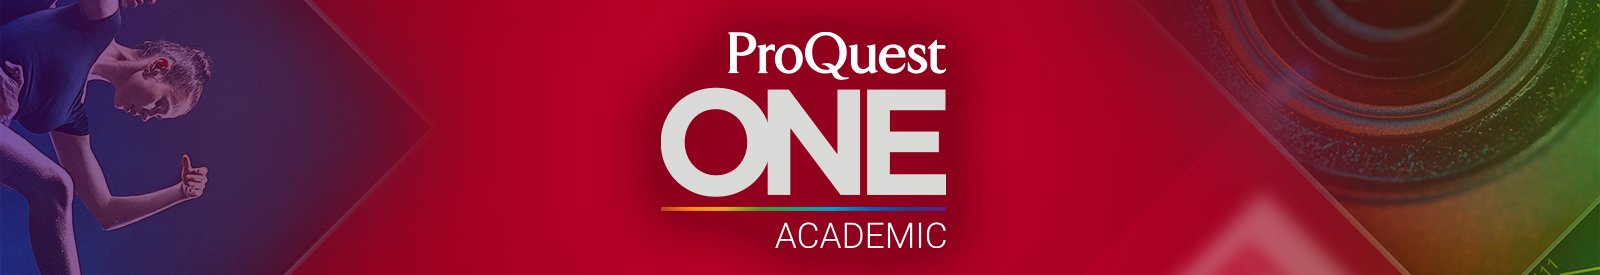 ProQuest One学术版